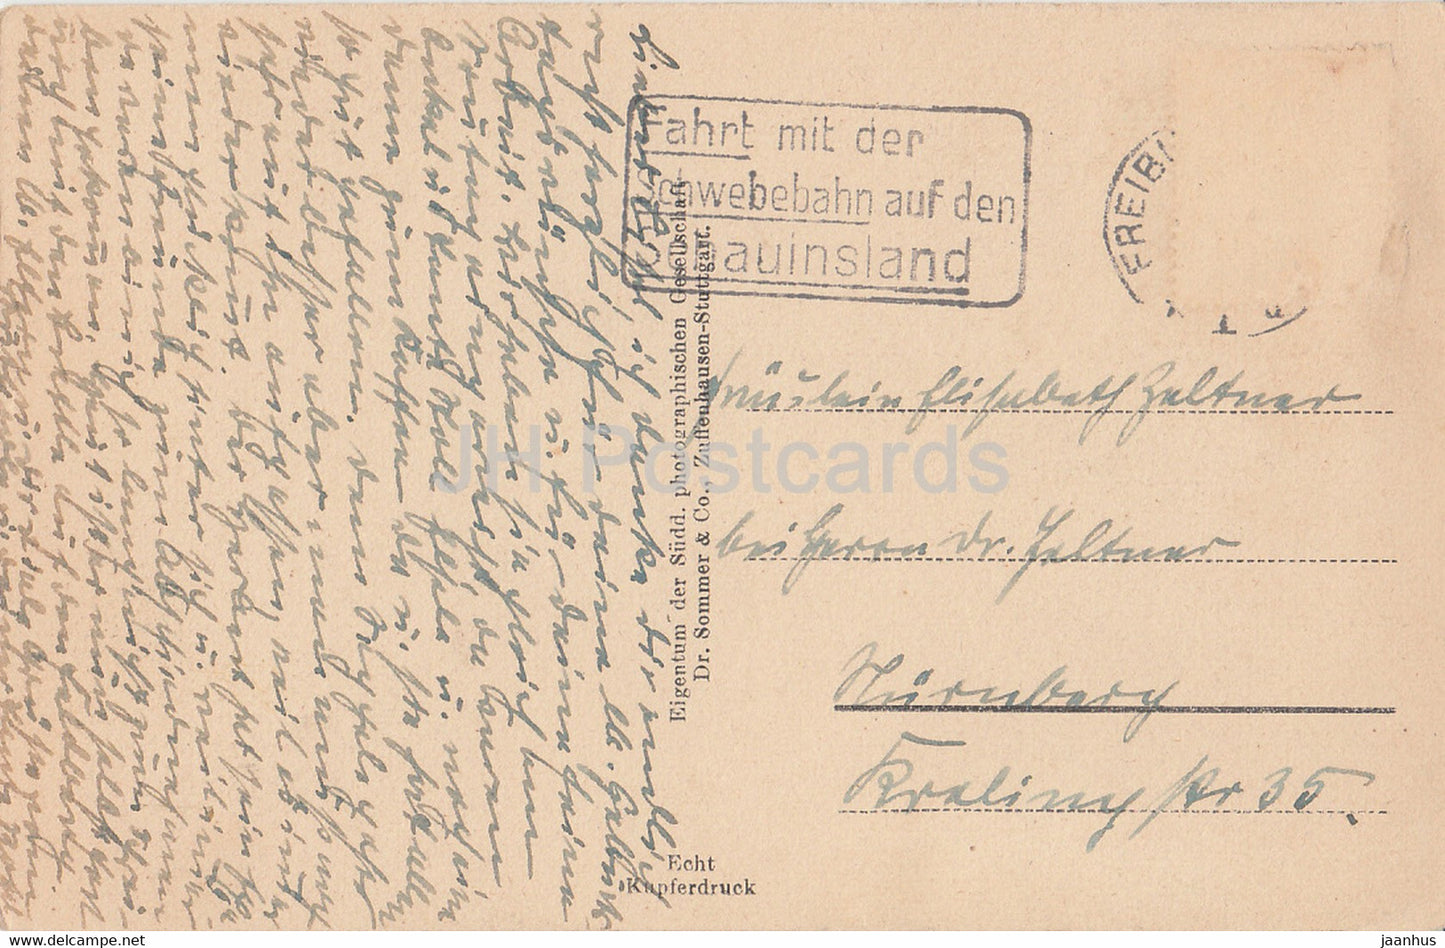 Freiburg i Br - 2606 - alte Postkarte - Deutschland - gebraucht